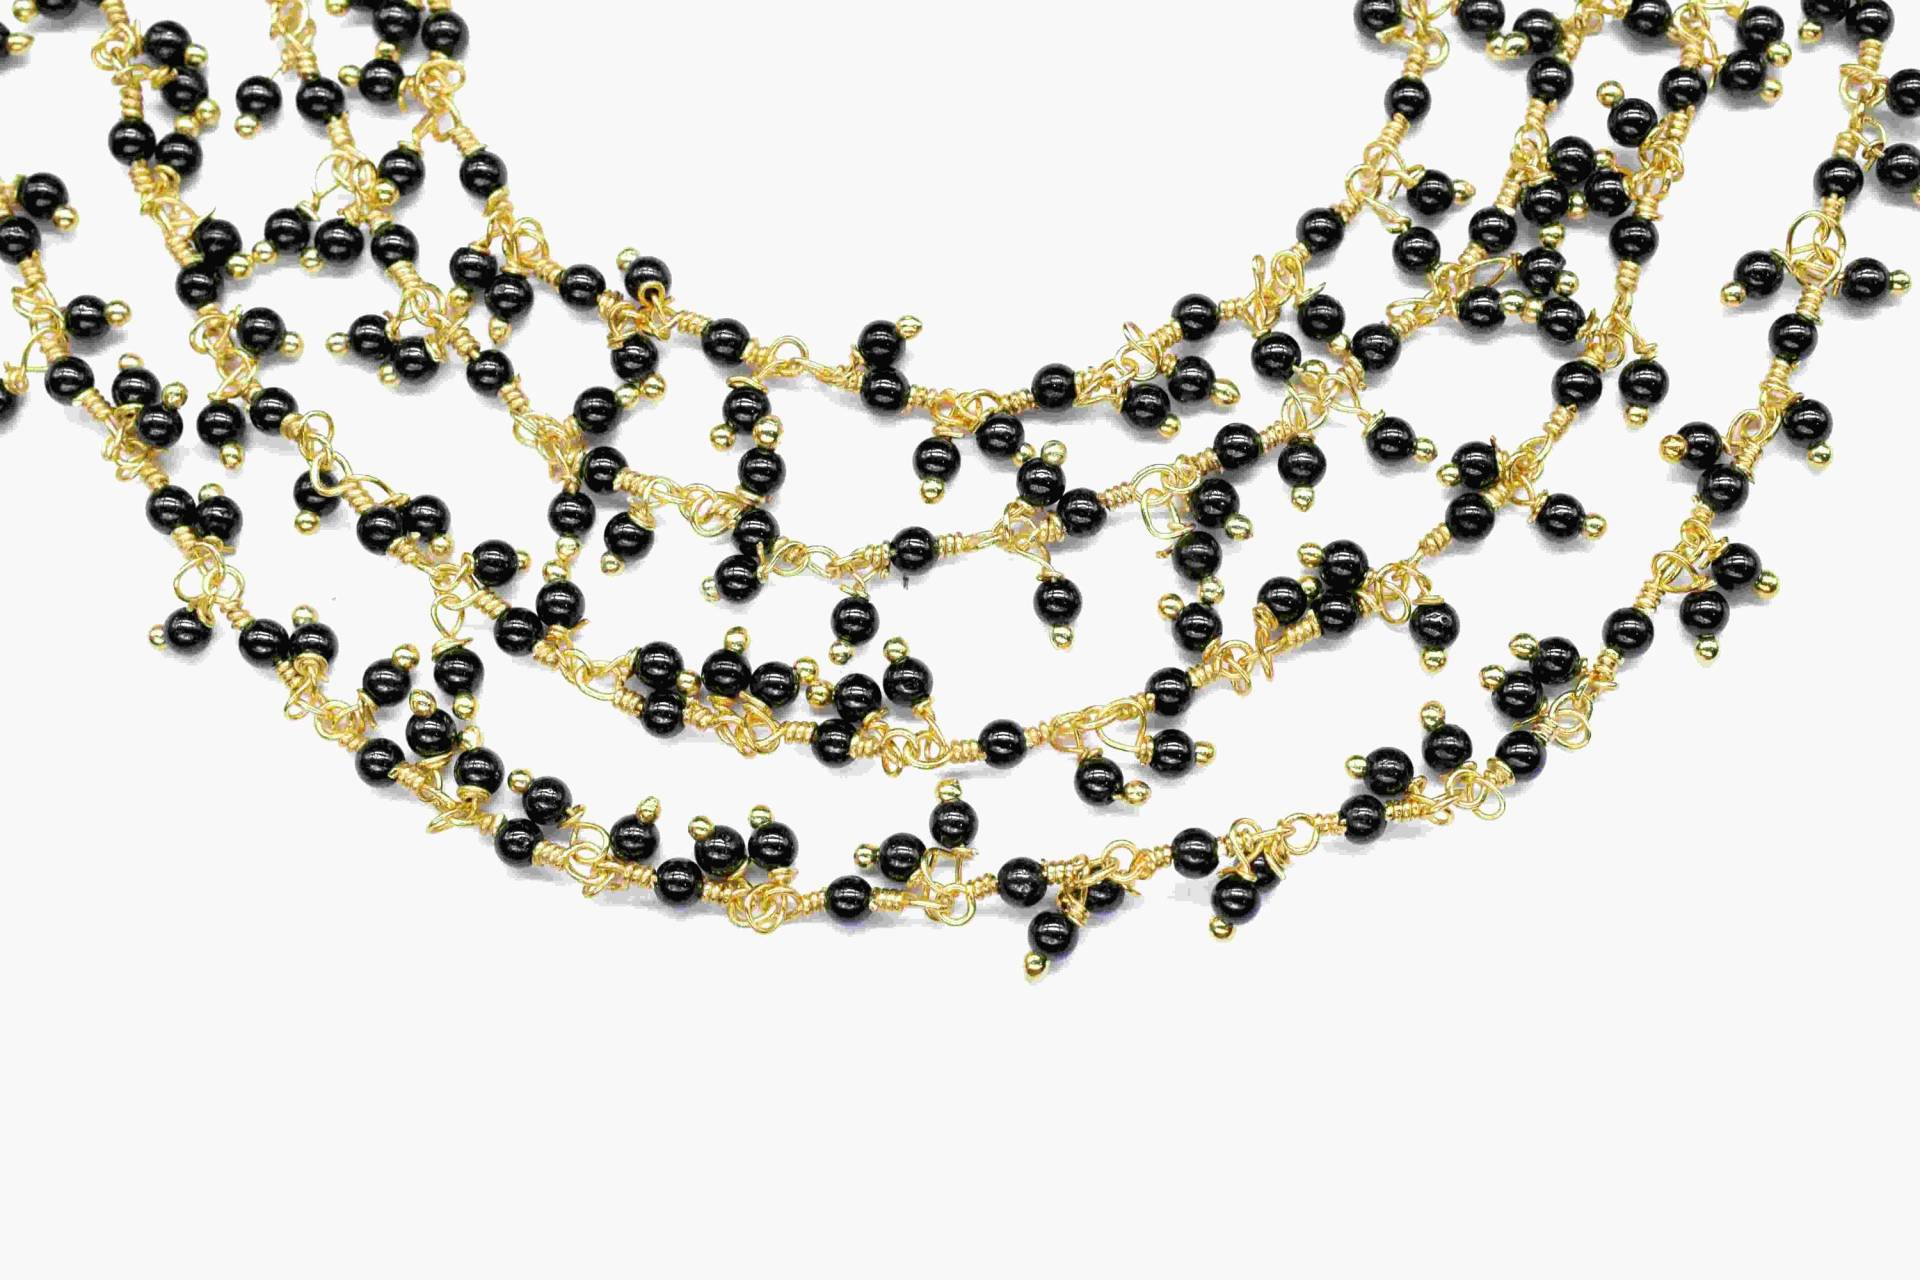 Schwarzer Onyx Cluster Rosenkranz Kette, Handgemachte Schmuck Machen Draht Gewickelt Perlen Kette Zu Fuß Für Halskette, Außergewöhnliche Spinell von GemsCreationINC